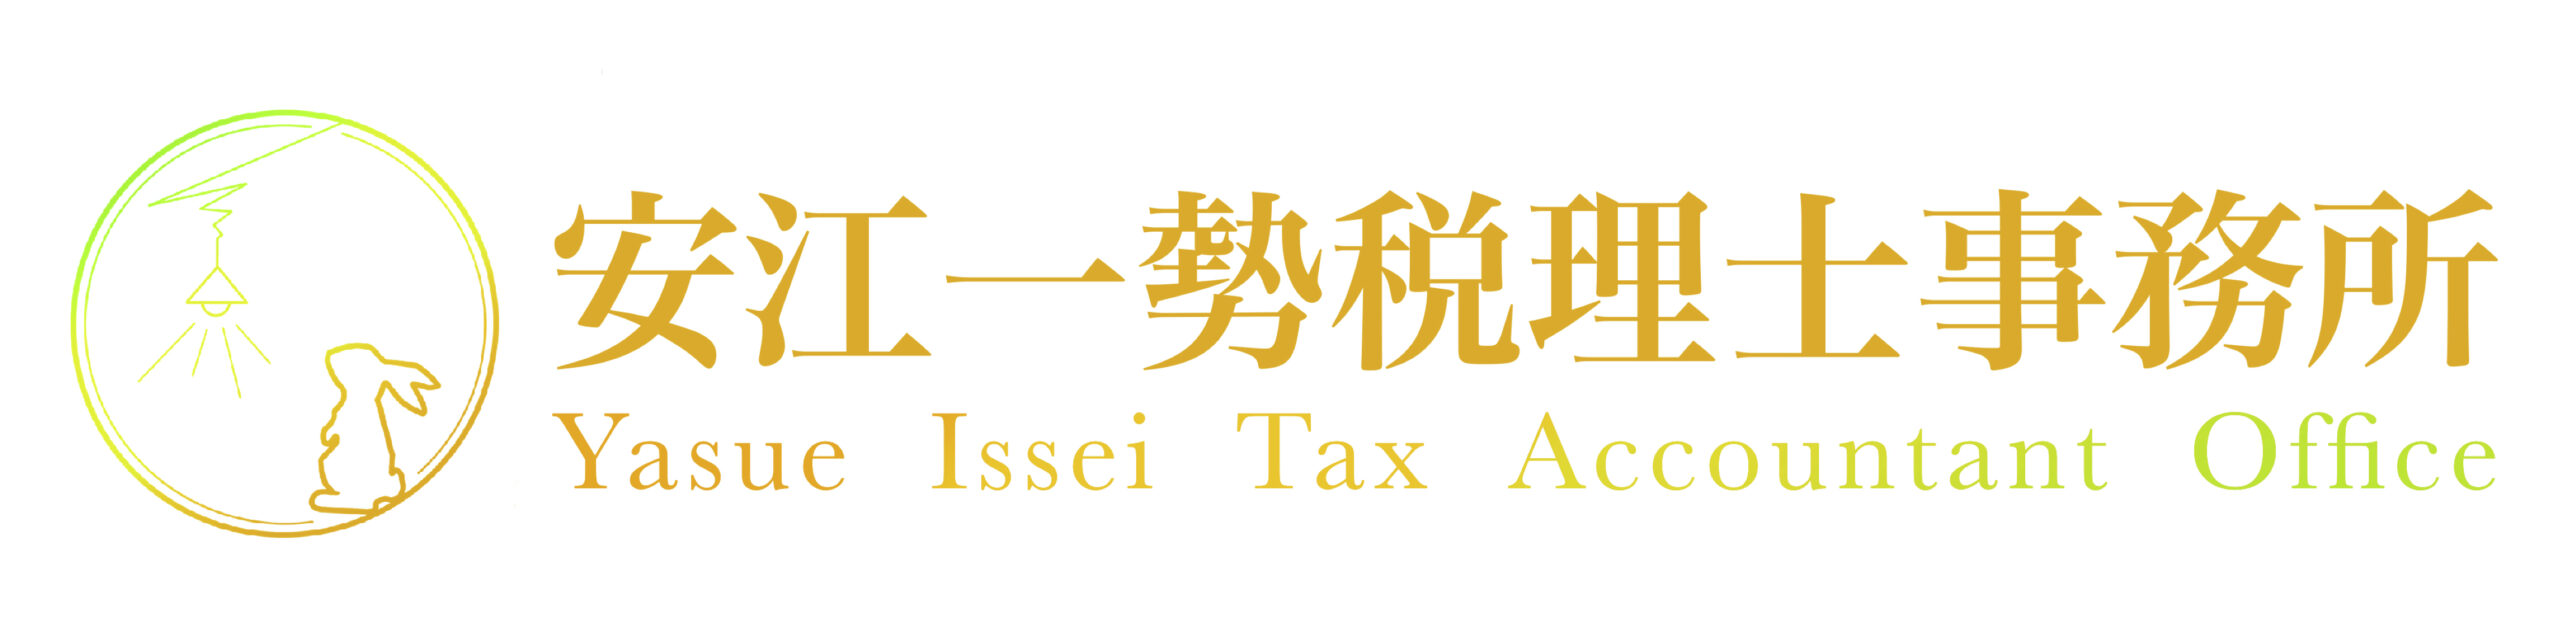 福岡市のフリーランスのための税理士 フリーランスやスタートアップの方に特化した安江一勢税理士事務所 代の若い税理士 があなたの事業に寄り添い 事業の成長をサポートします